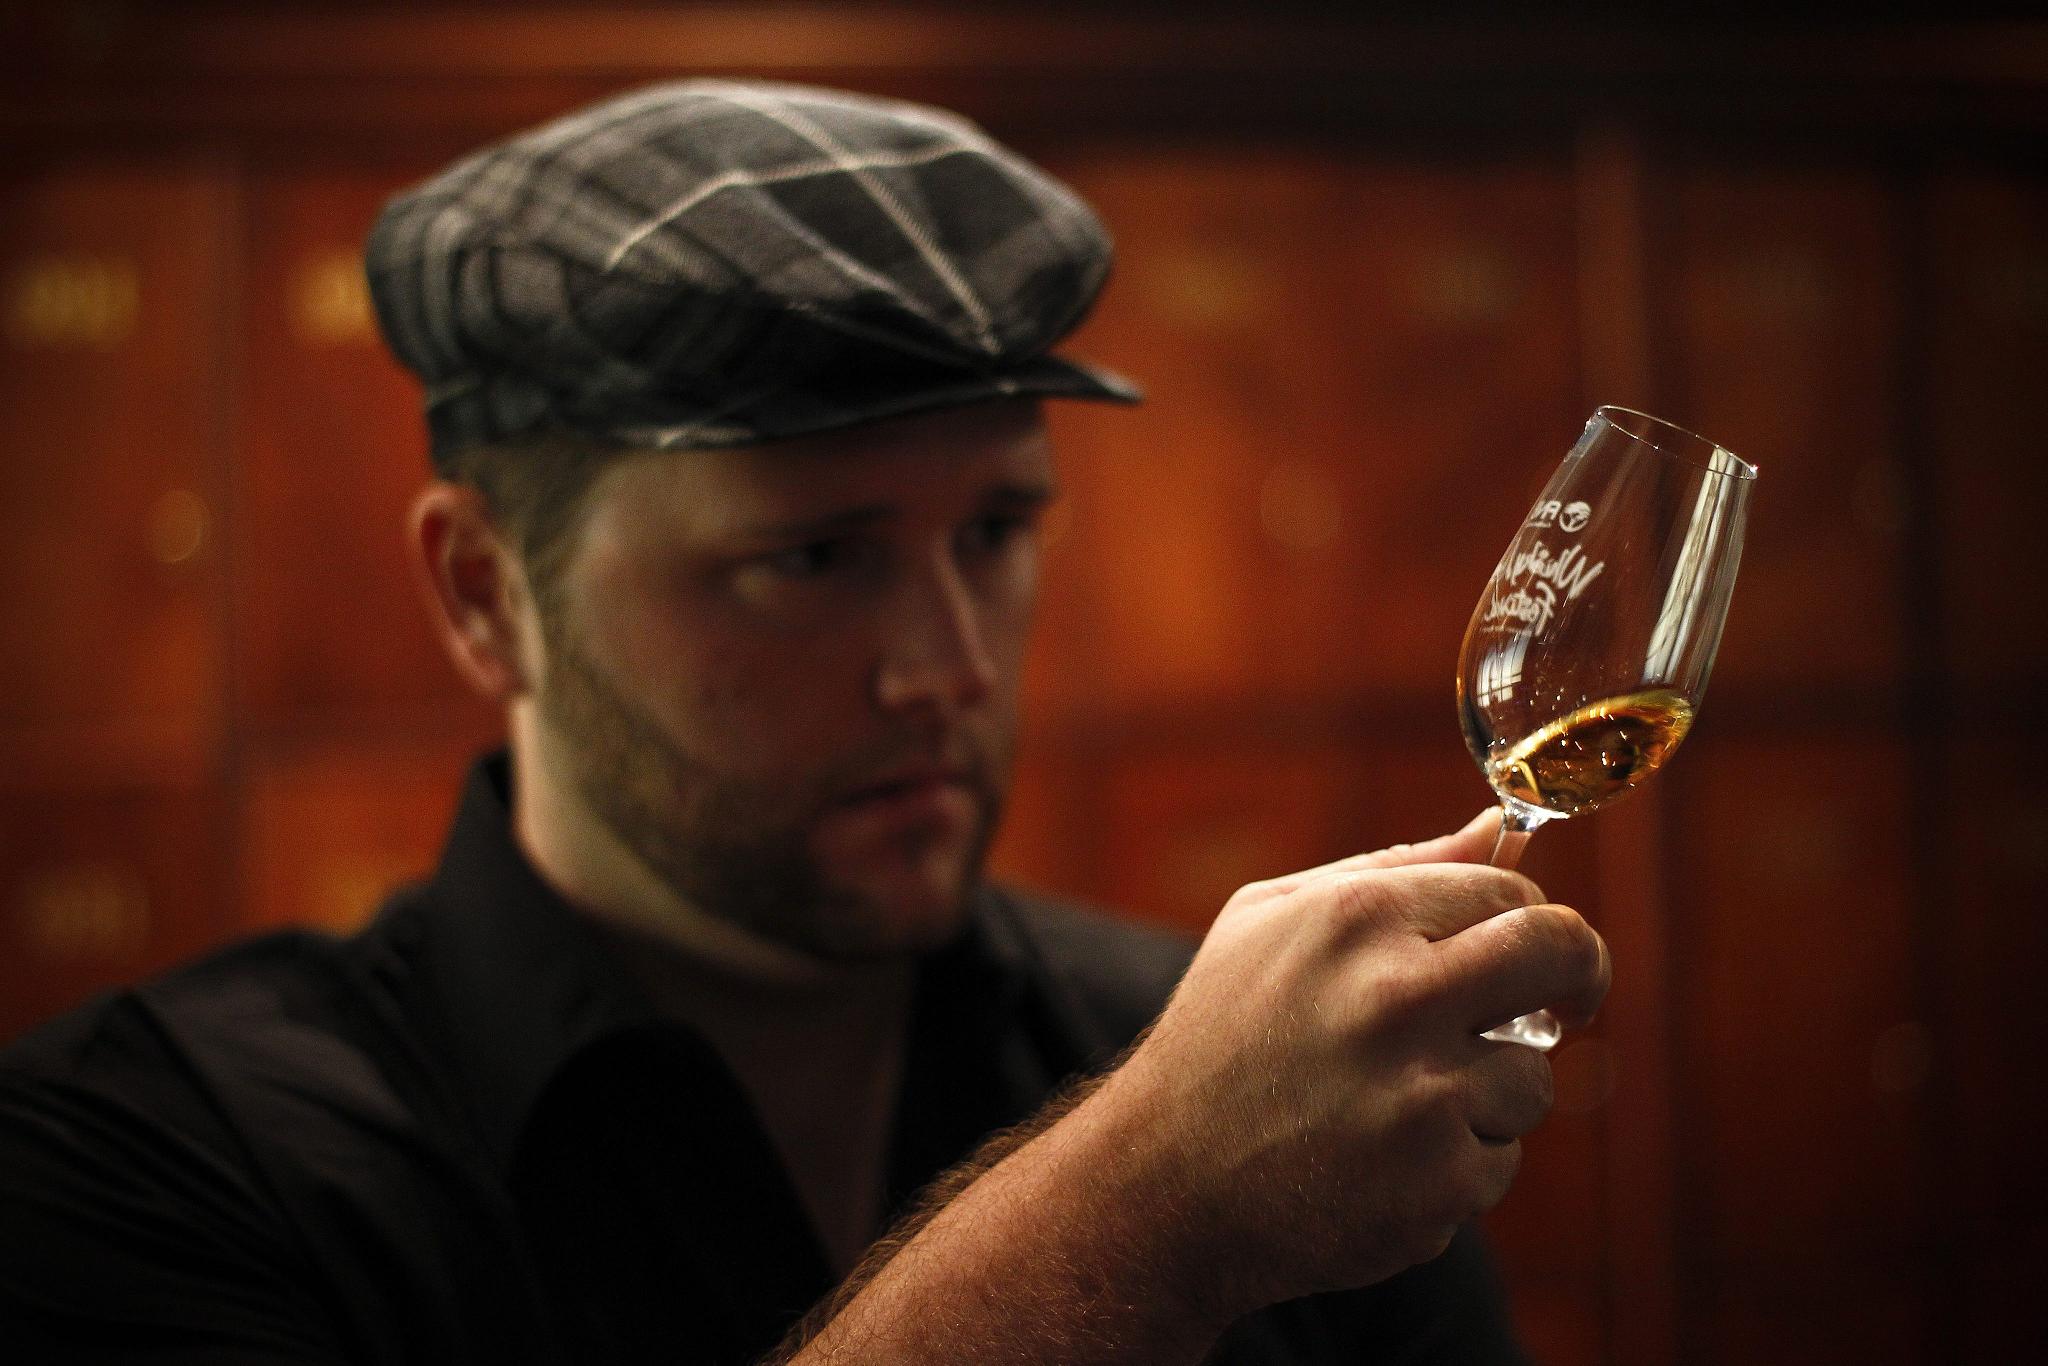 Un hombre degusta un whisky escocés. EFE/Archivo.NIC BOTHMA